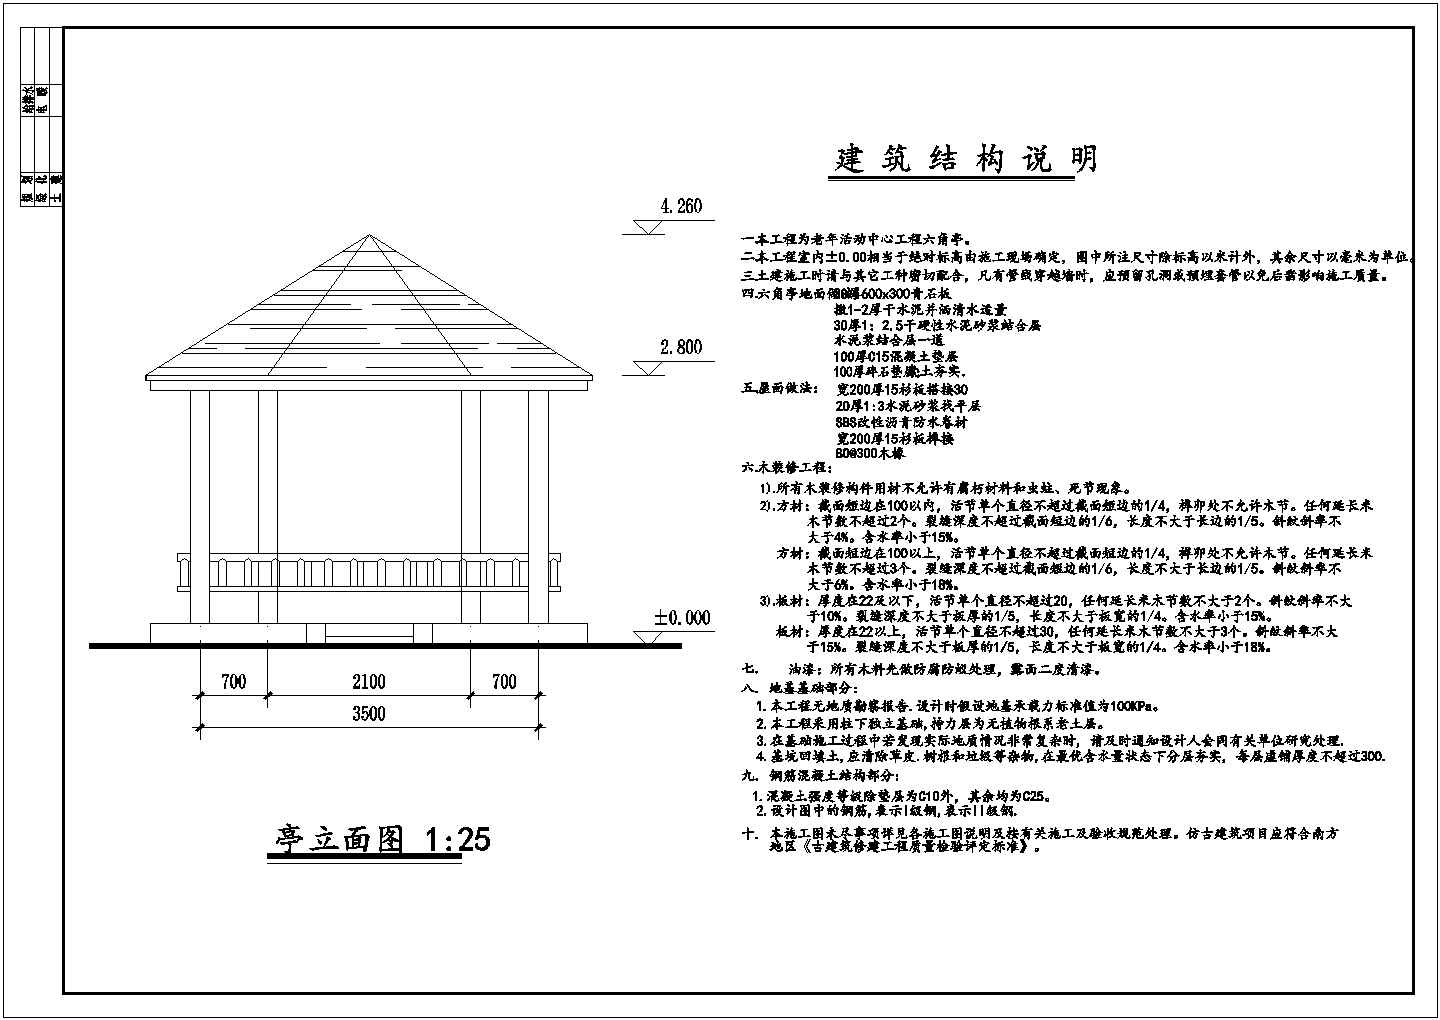 某老年活动中心工程六角亭建筑结构设计施工图